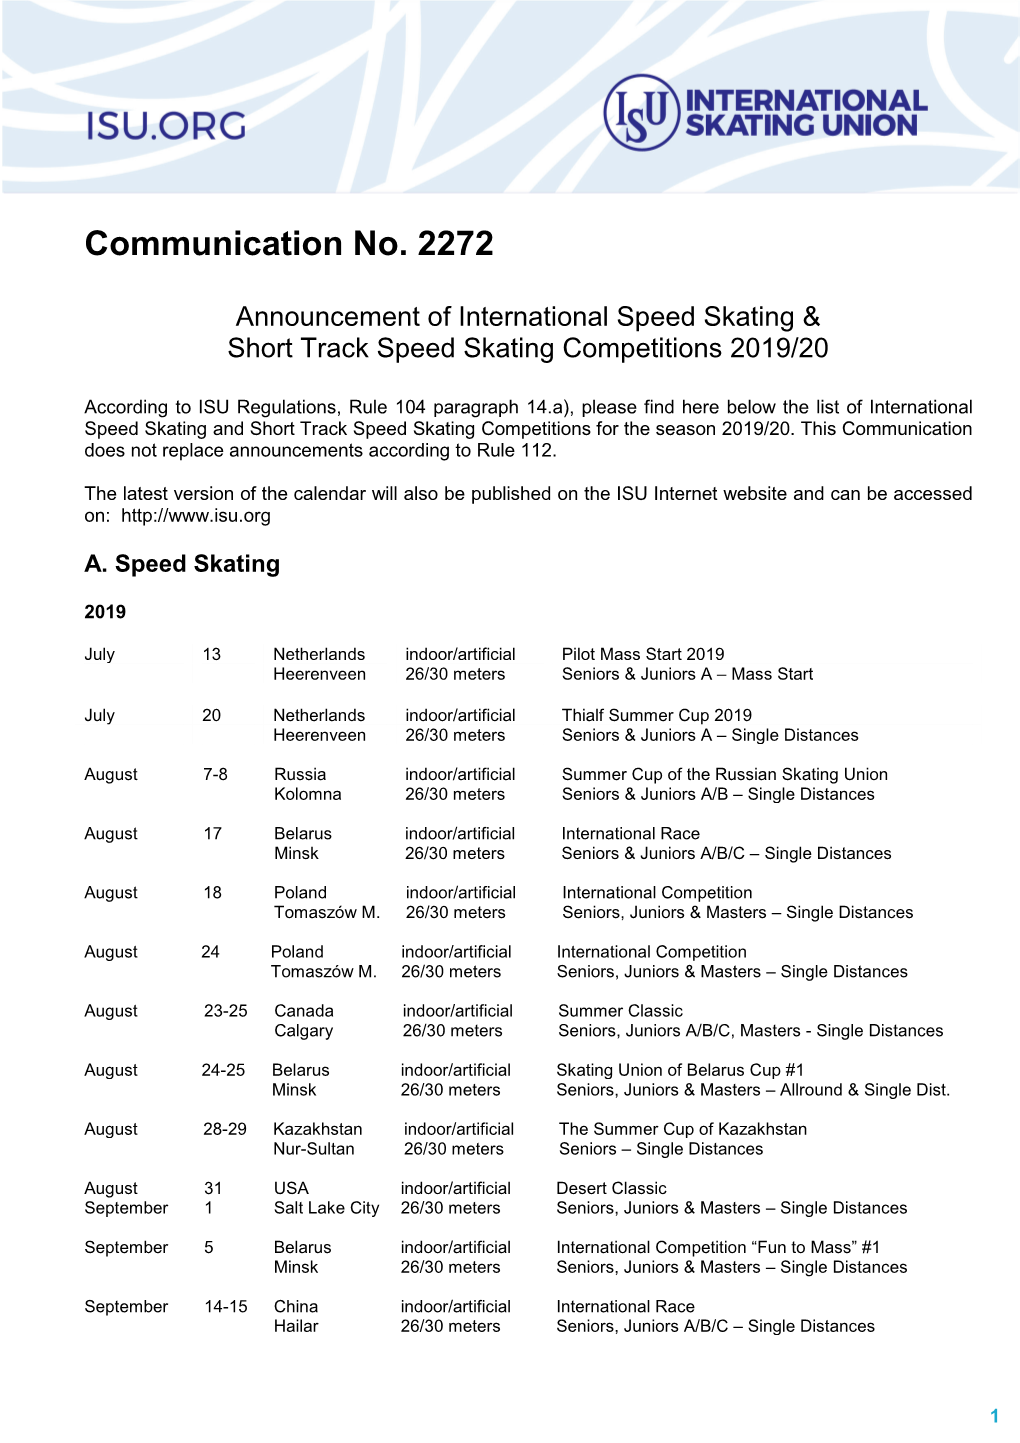 ISU Communication 2272